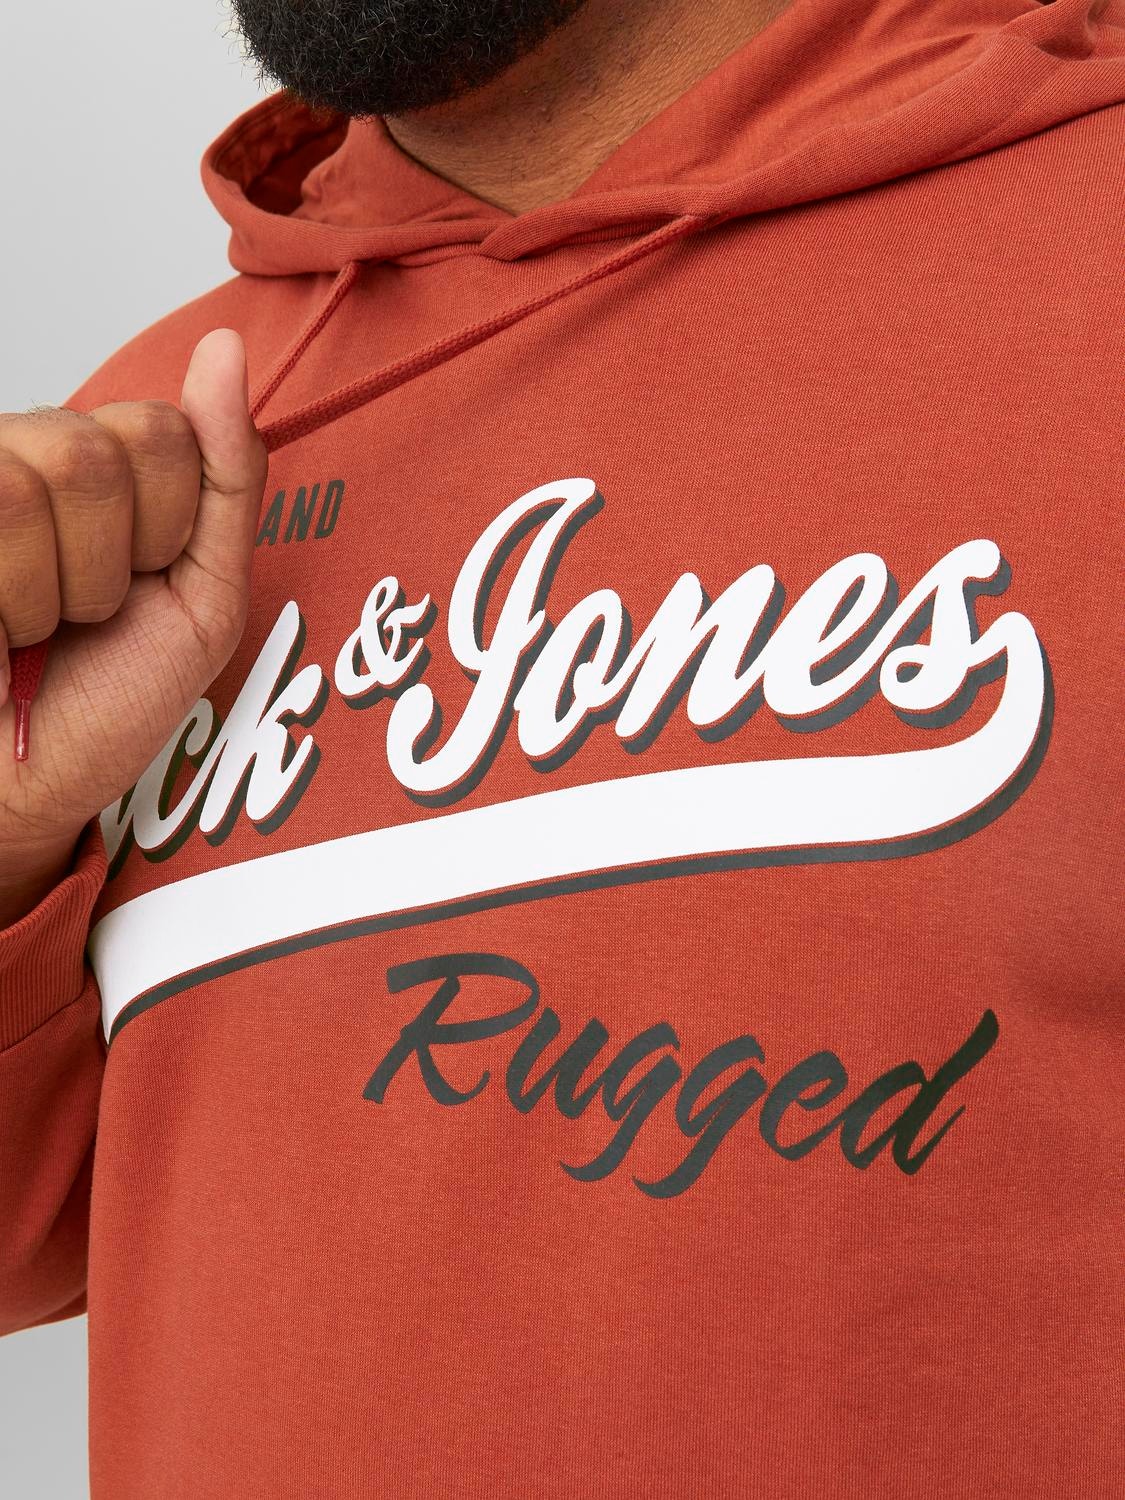 Jack & Jones Plus Size Z logo Bluza z kapturem -Cinnabar - 12236803